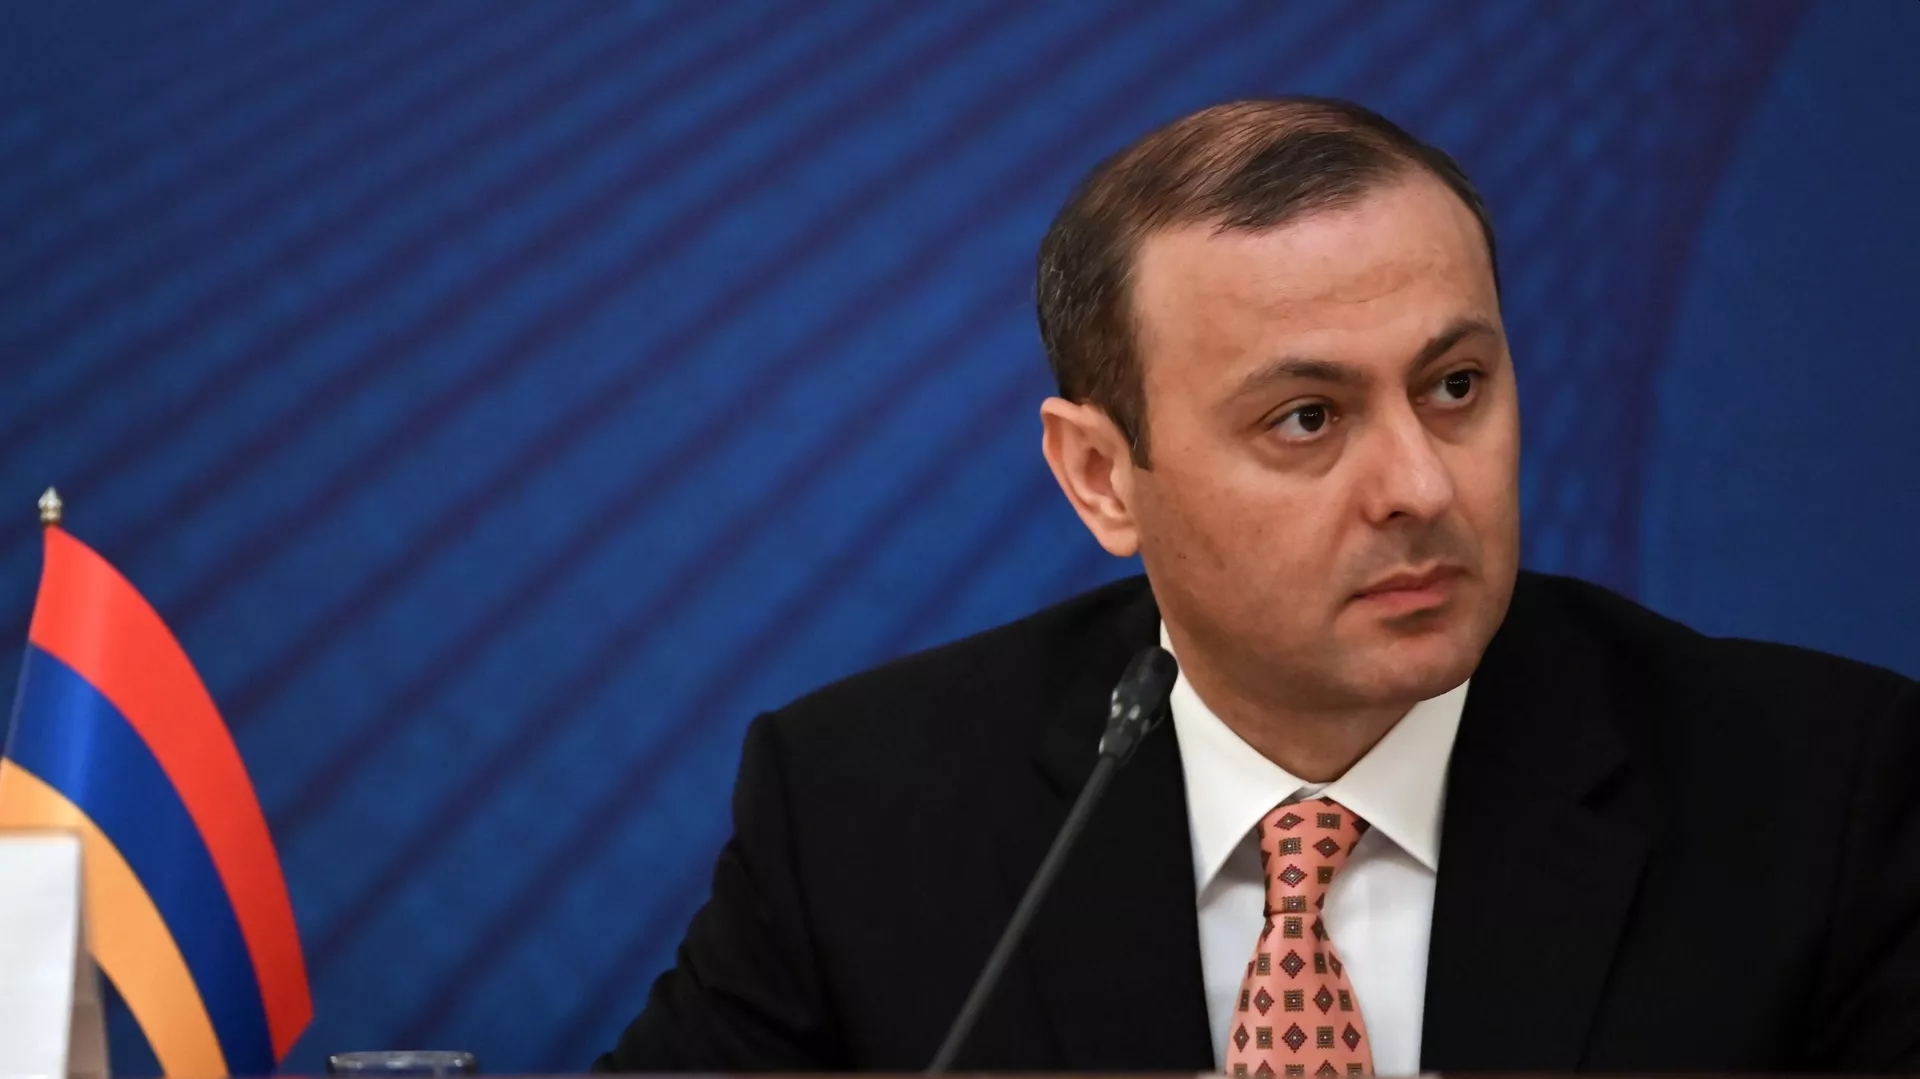 Представитель Армении не будет участвовать в встрече по безопасности в Петербурге